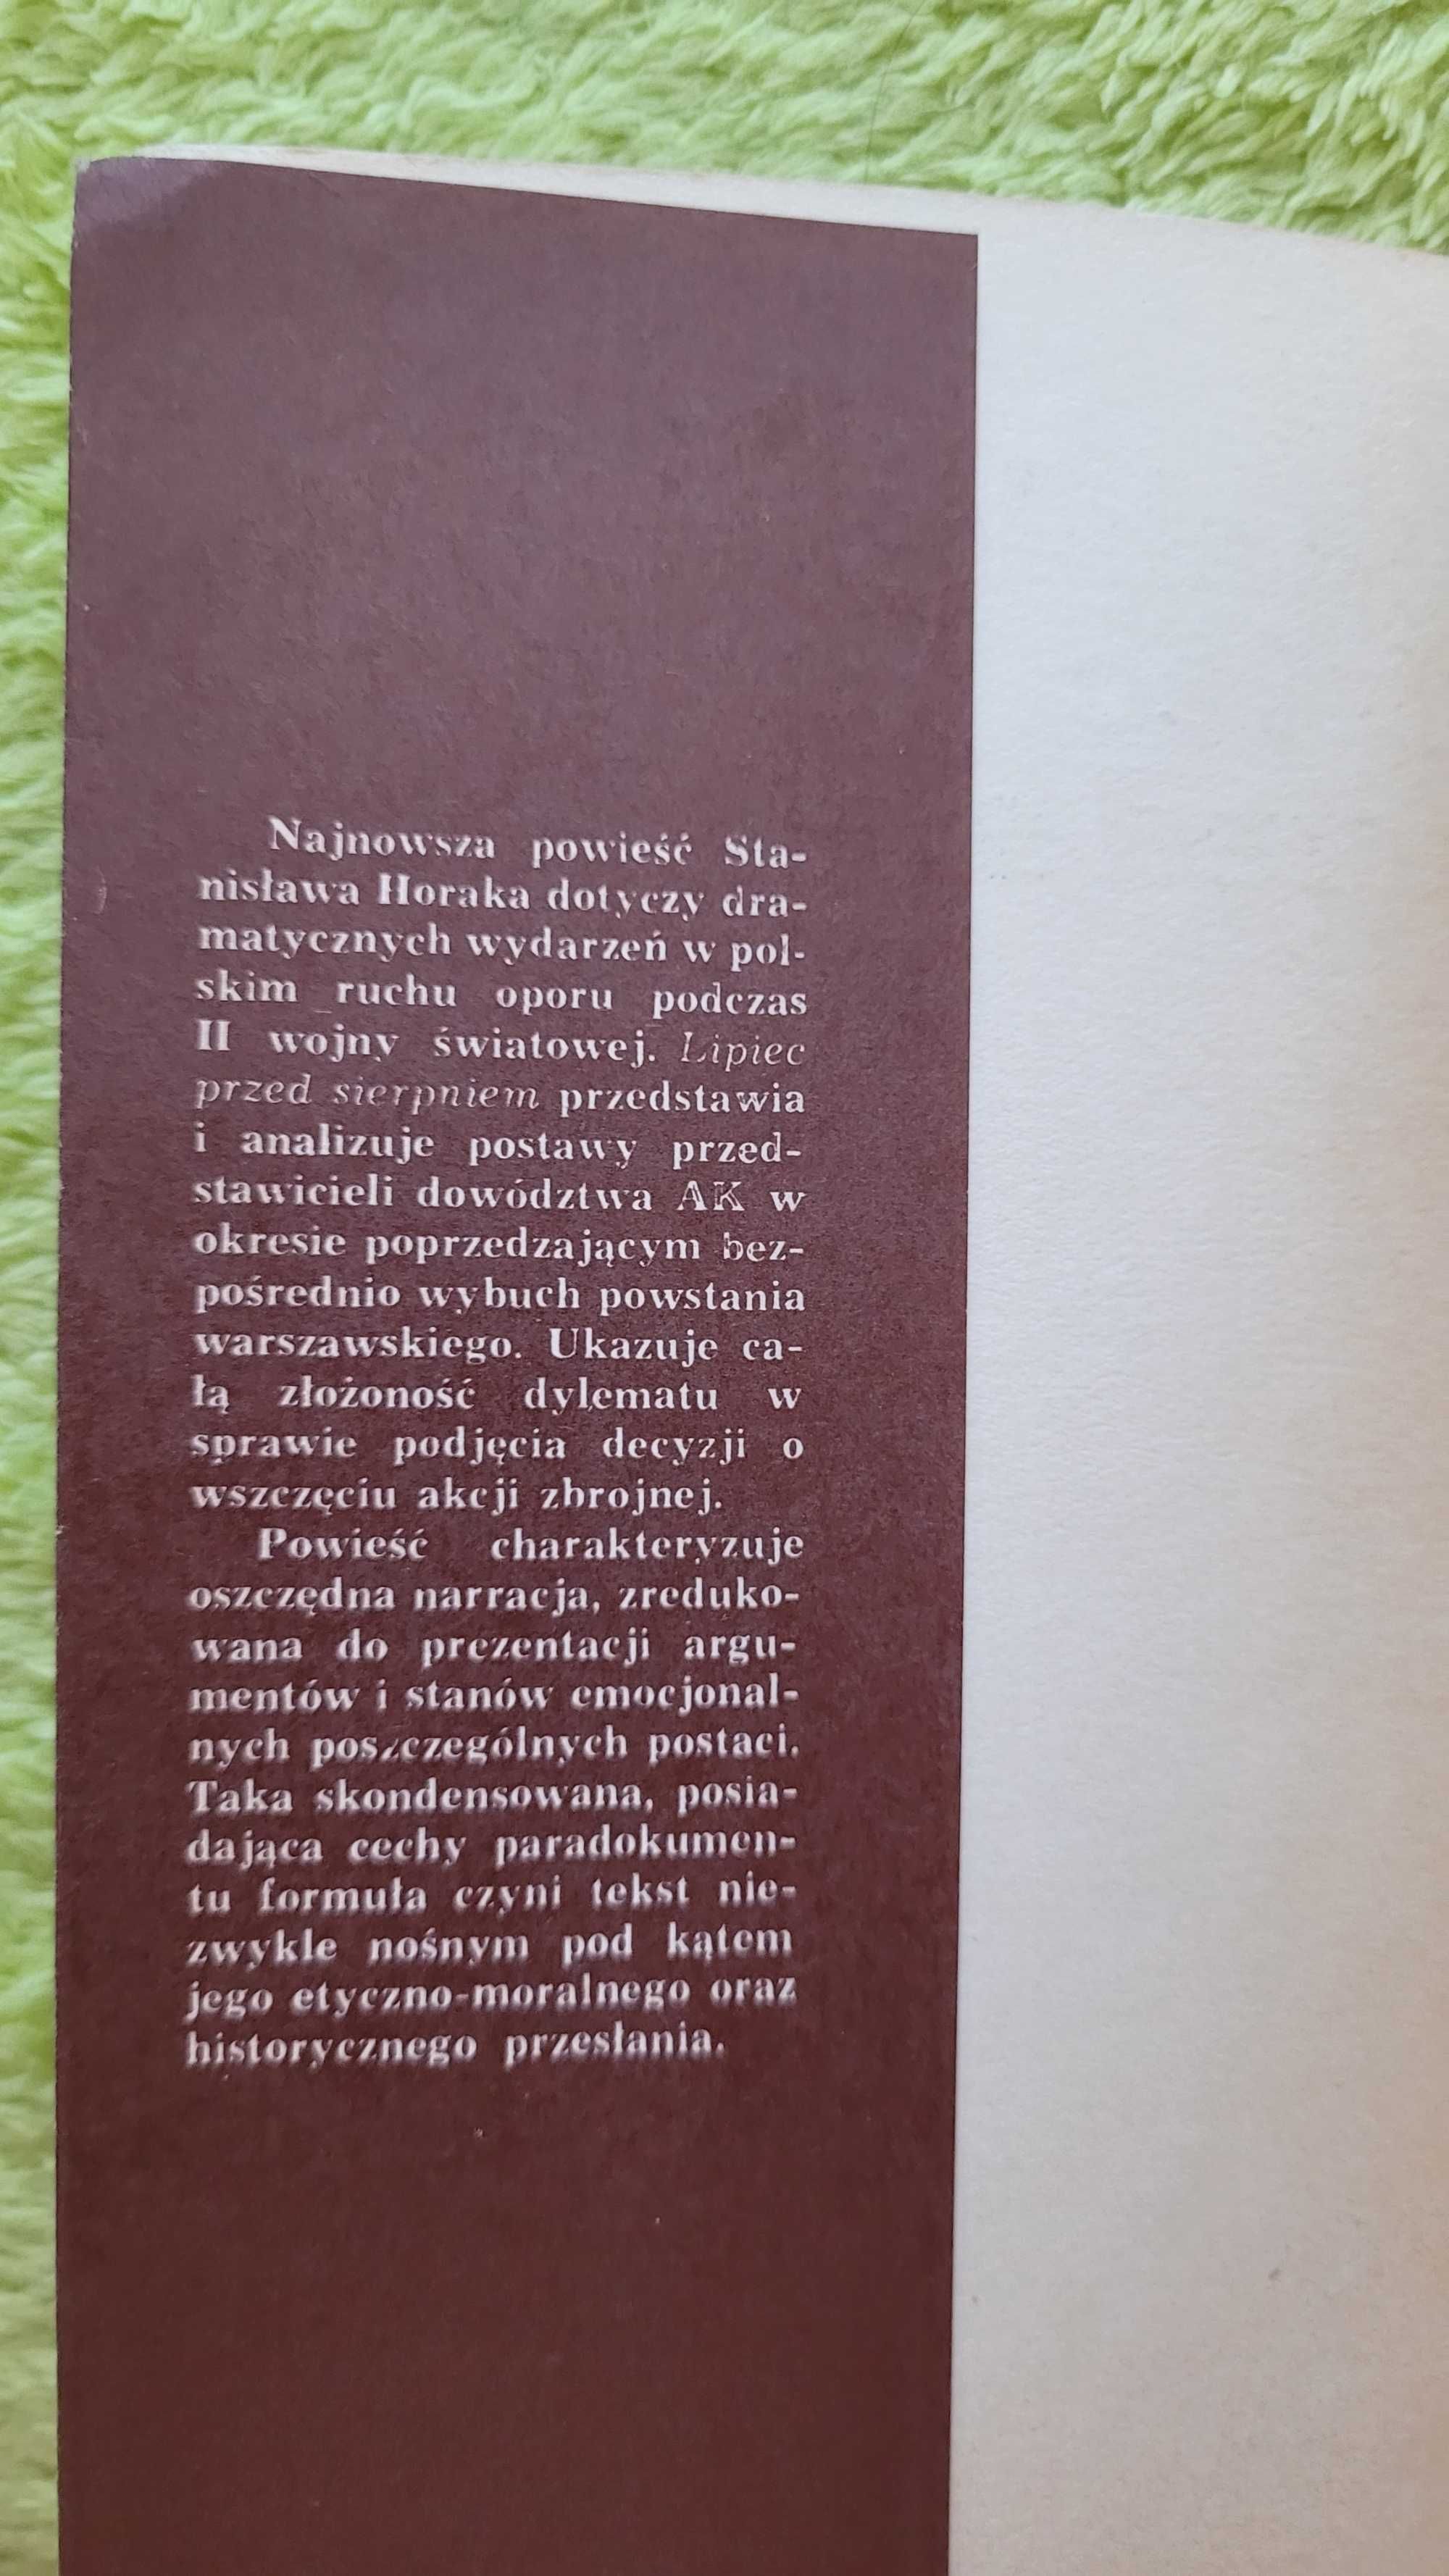 Książka: "Lipiec przed sierpniem", Stanisław Horak